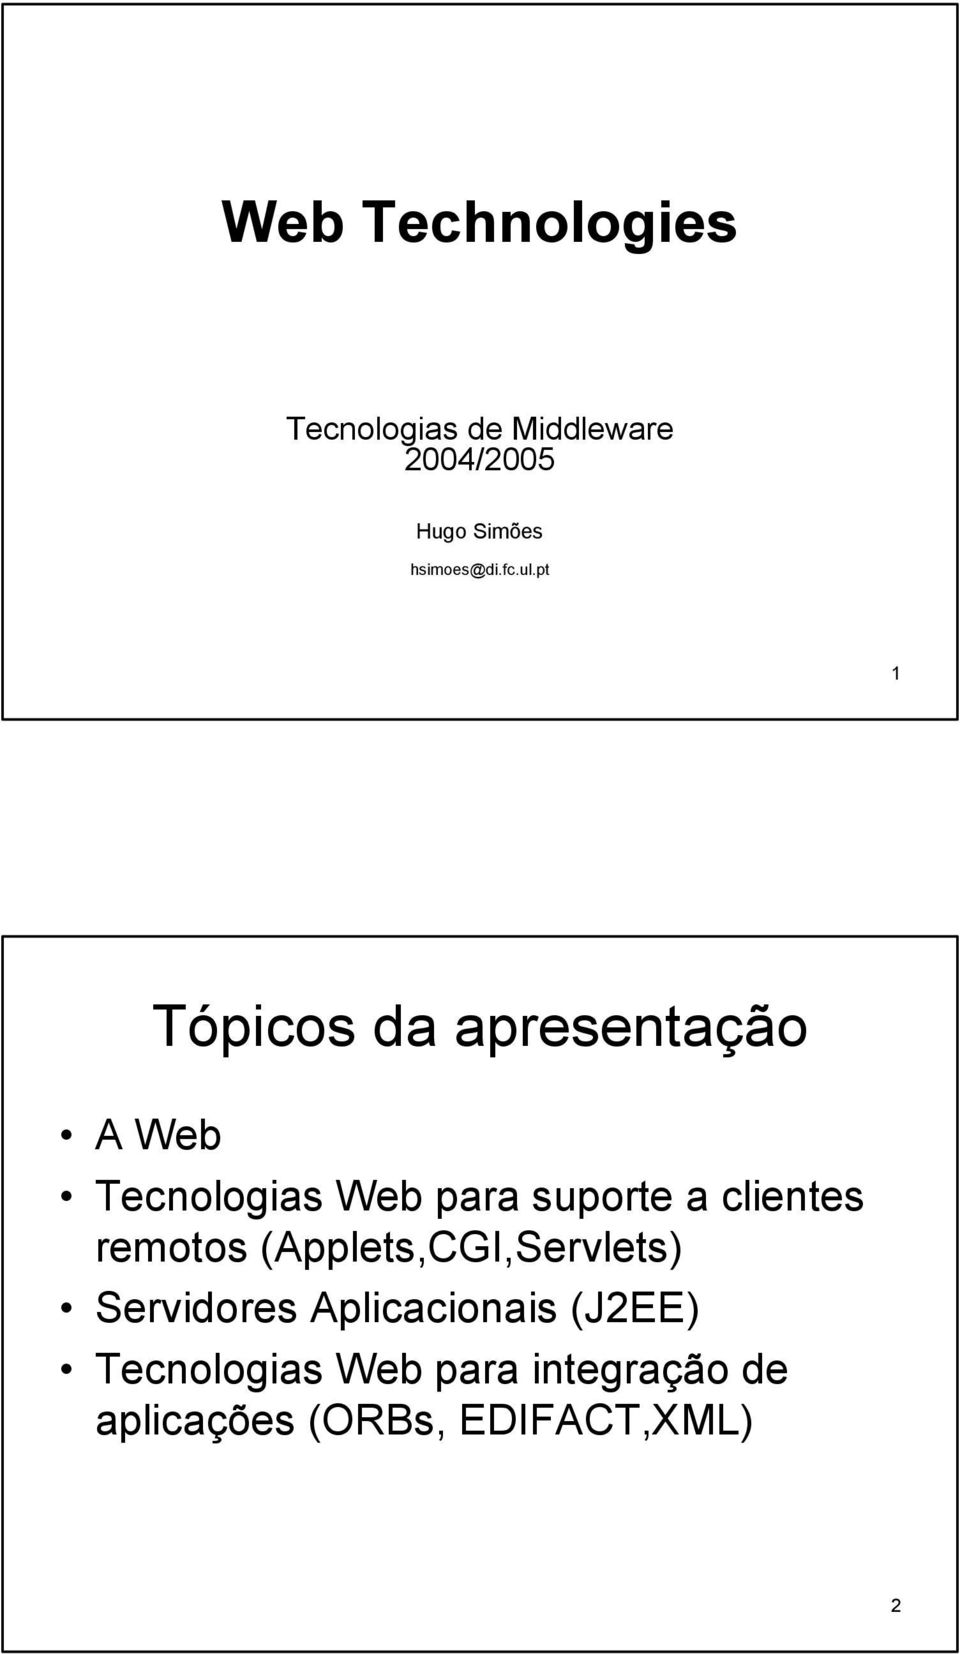 pt 1 A Web Tópicos da apresentação Tecnologias Web para suporte a